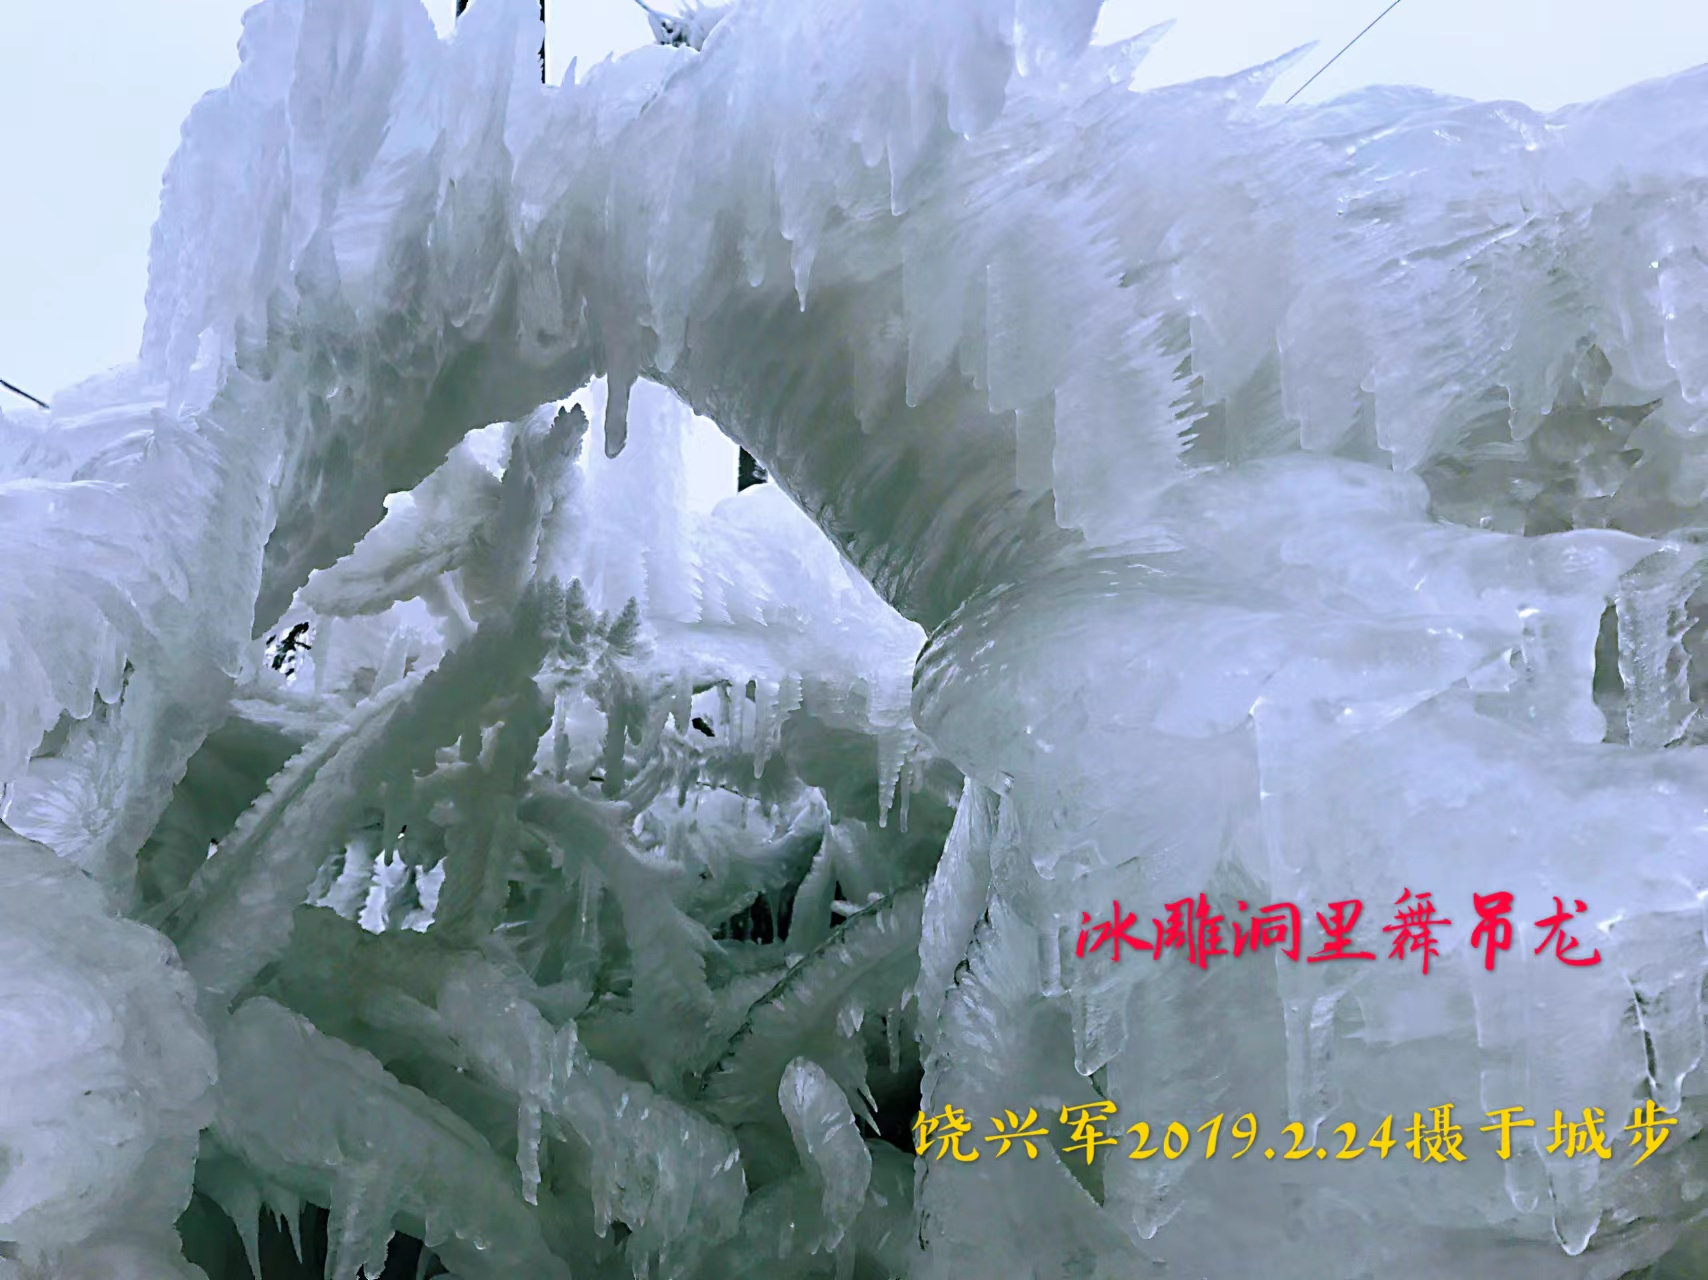 威溪冰雕景观4.png